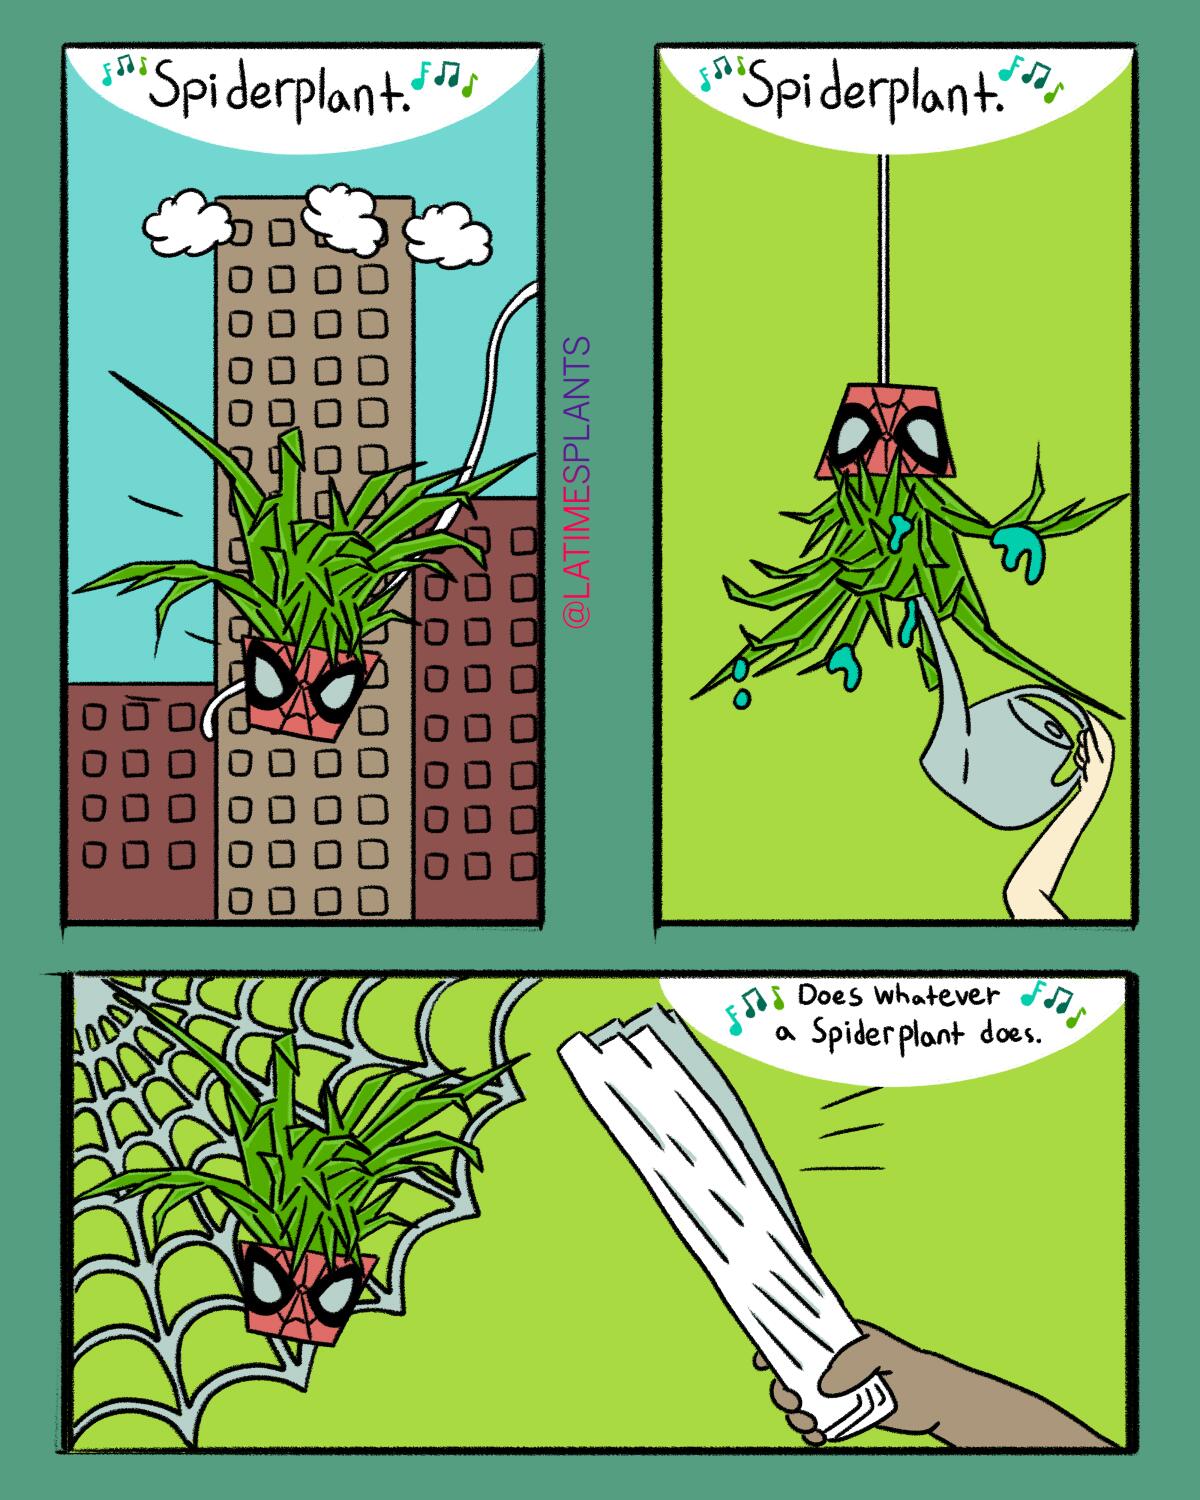 Spiderplant